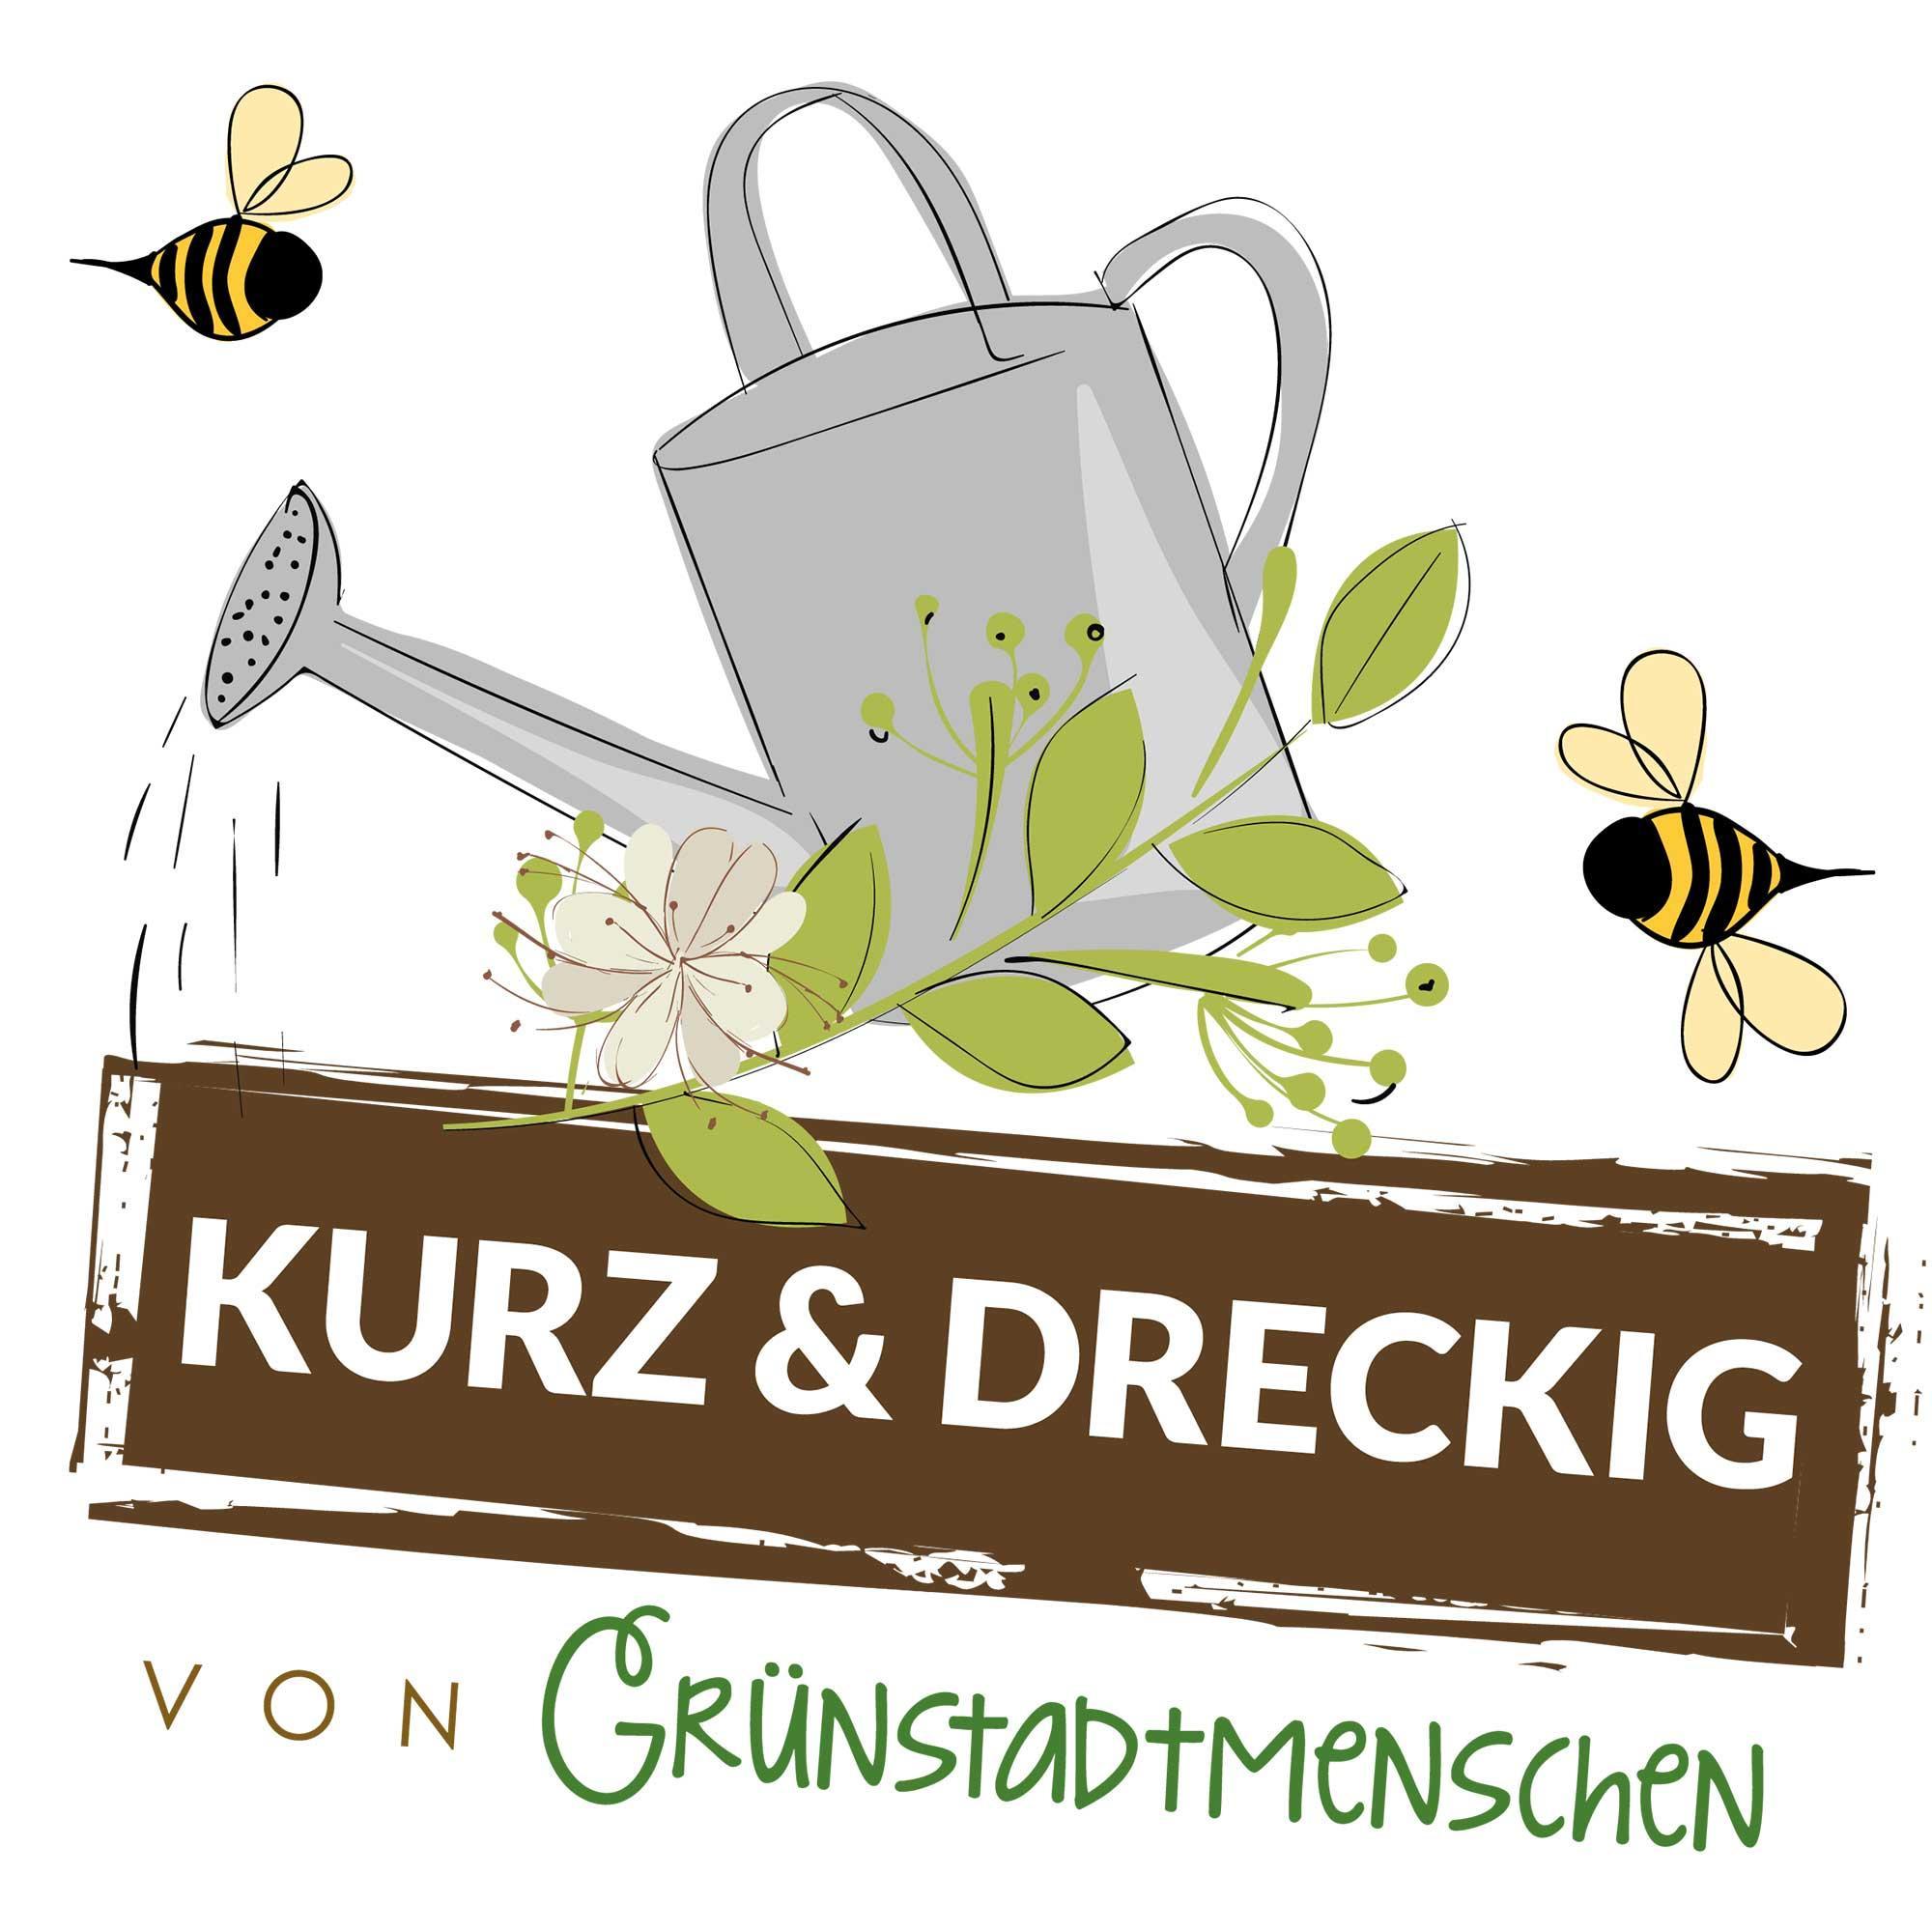 #66 Kurz & dreckig: Karinas Gartentipps für den September